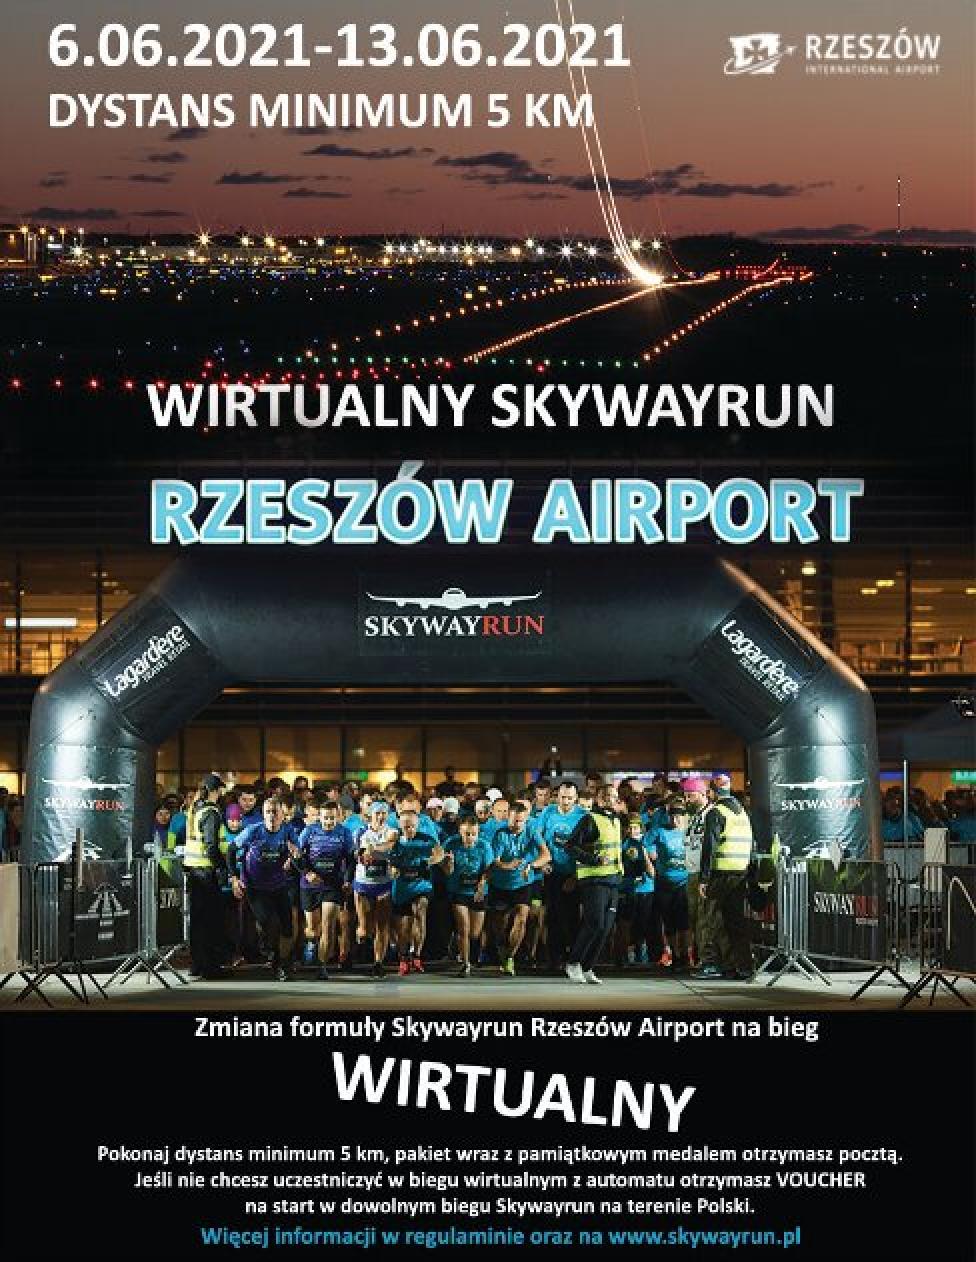 Wirtualny Skywayrun Rzeszów Airport 2021 (fot. monsterevent.pl)